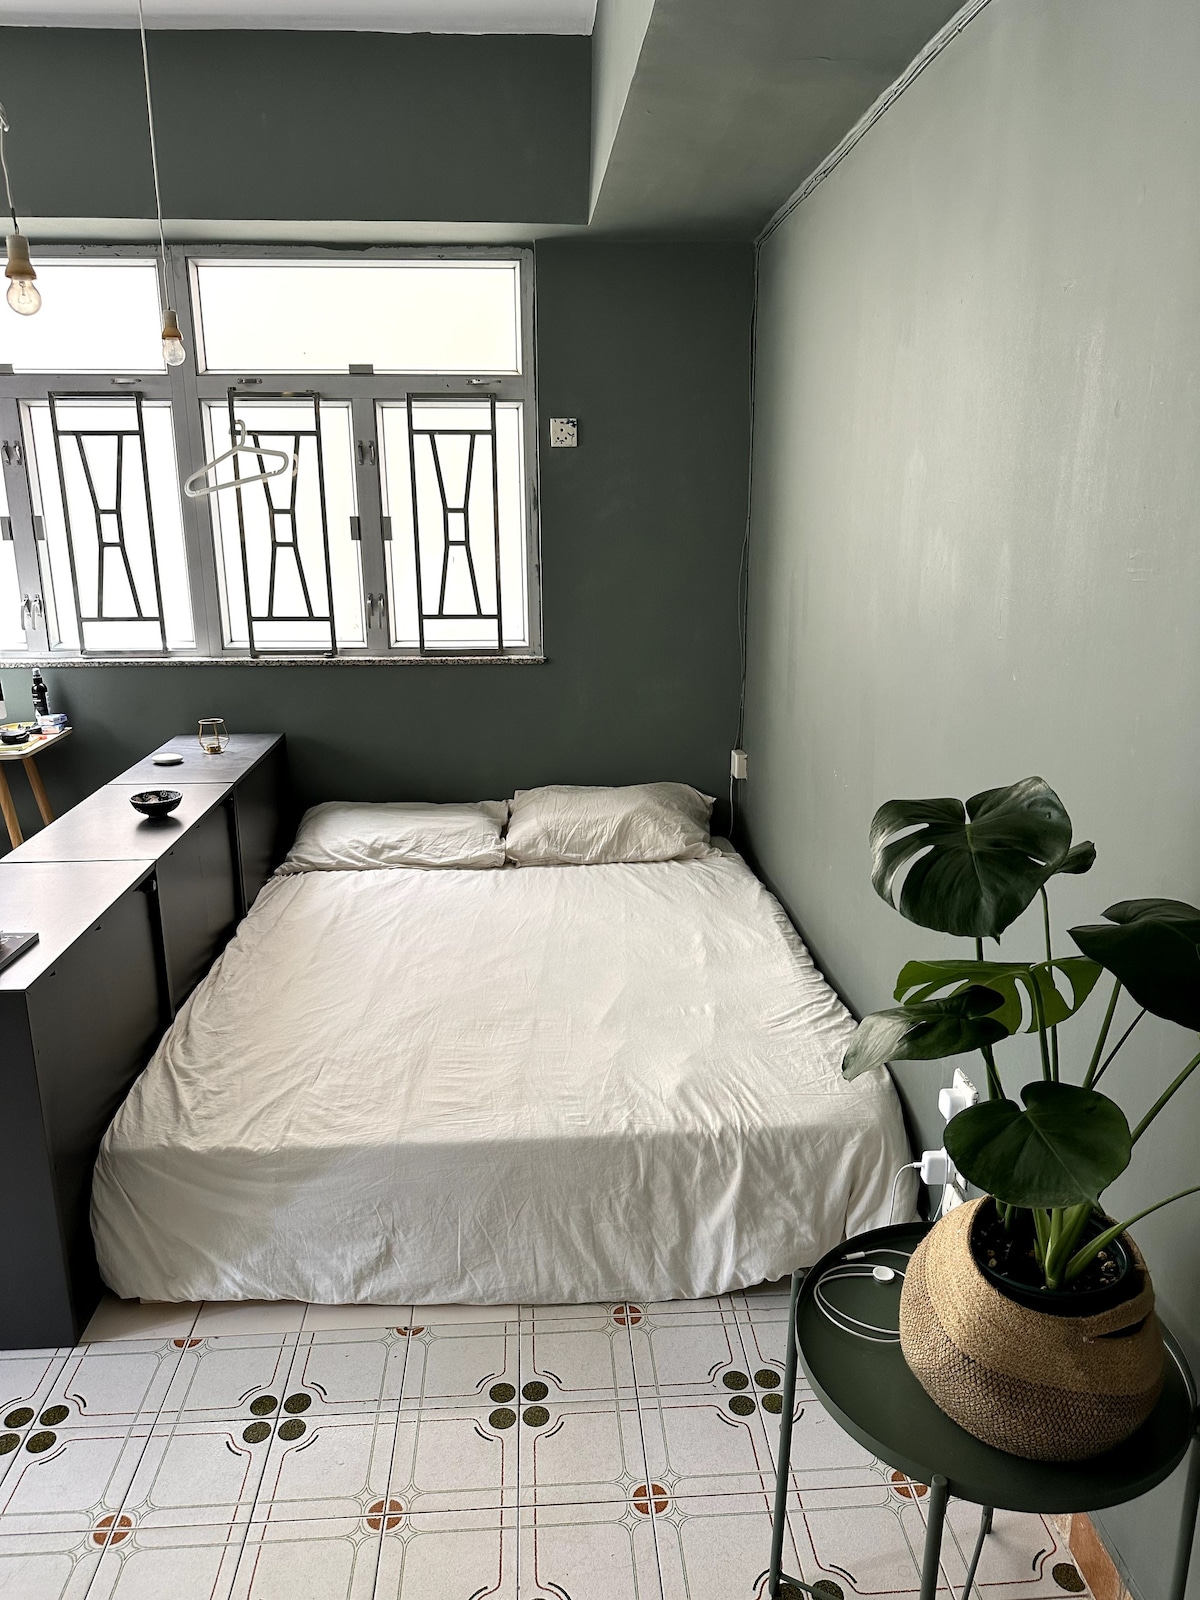 大航（ Tai Hang ）舒适的单间公寓